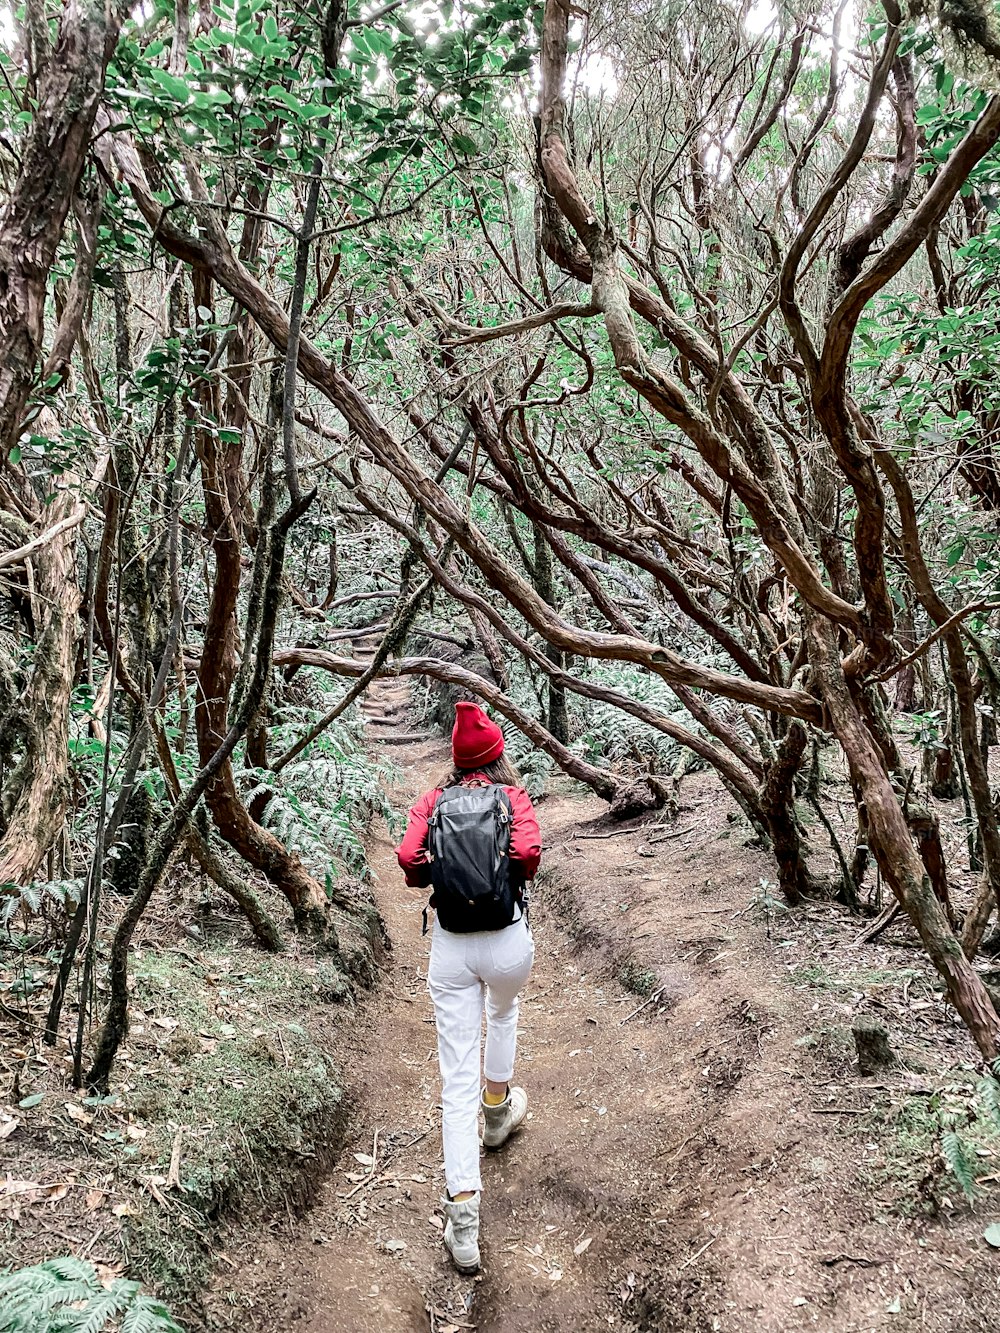 Mulher caminhando com mochila na bela floresta tropical, viajando na ilha de Tenerife, Espanha. Imagem feita no telemóvel